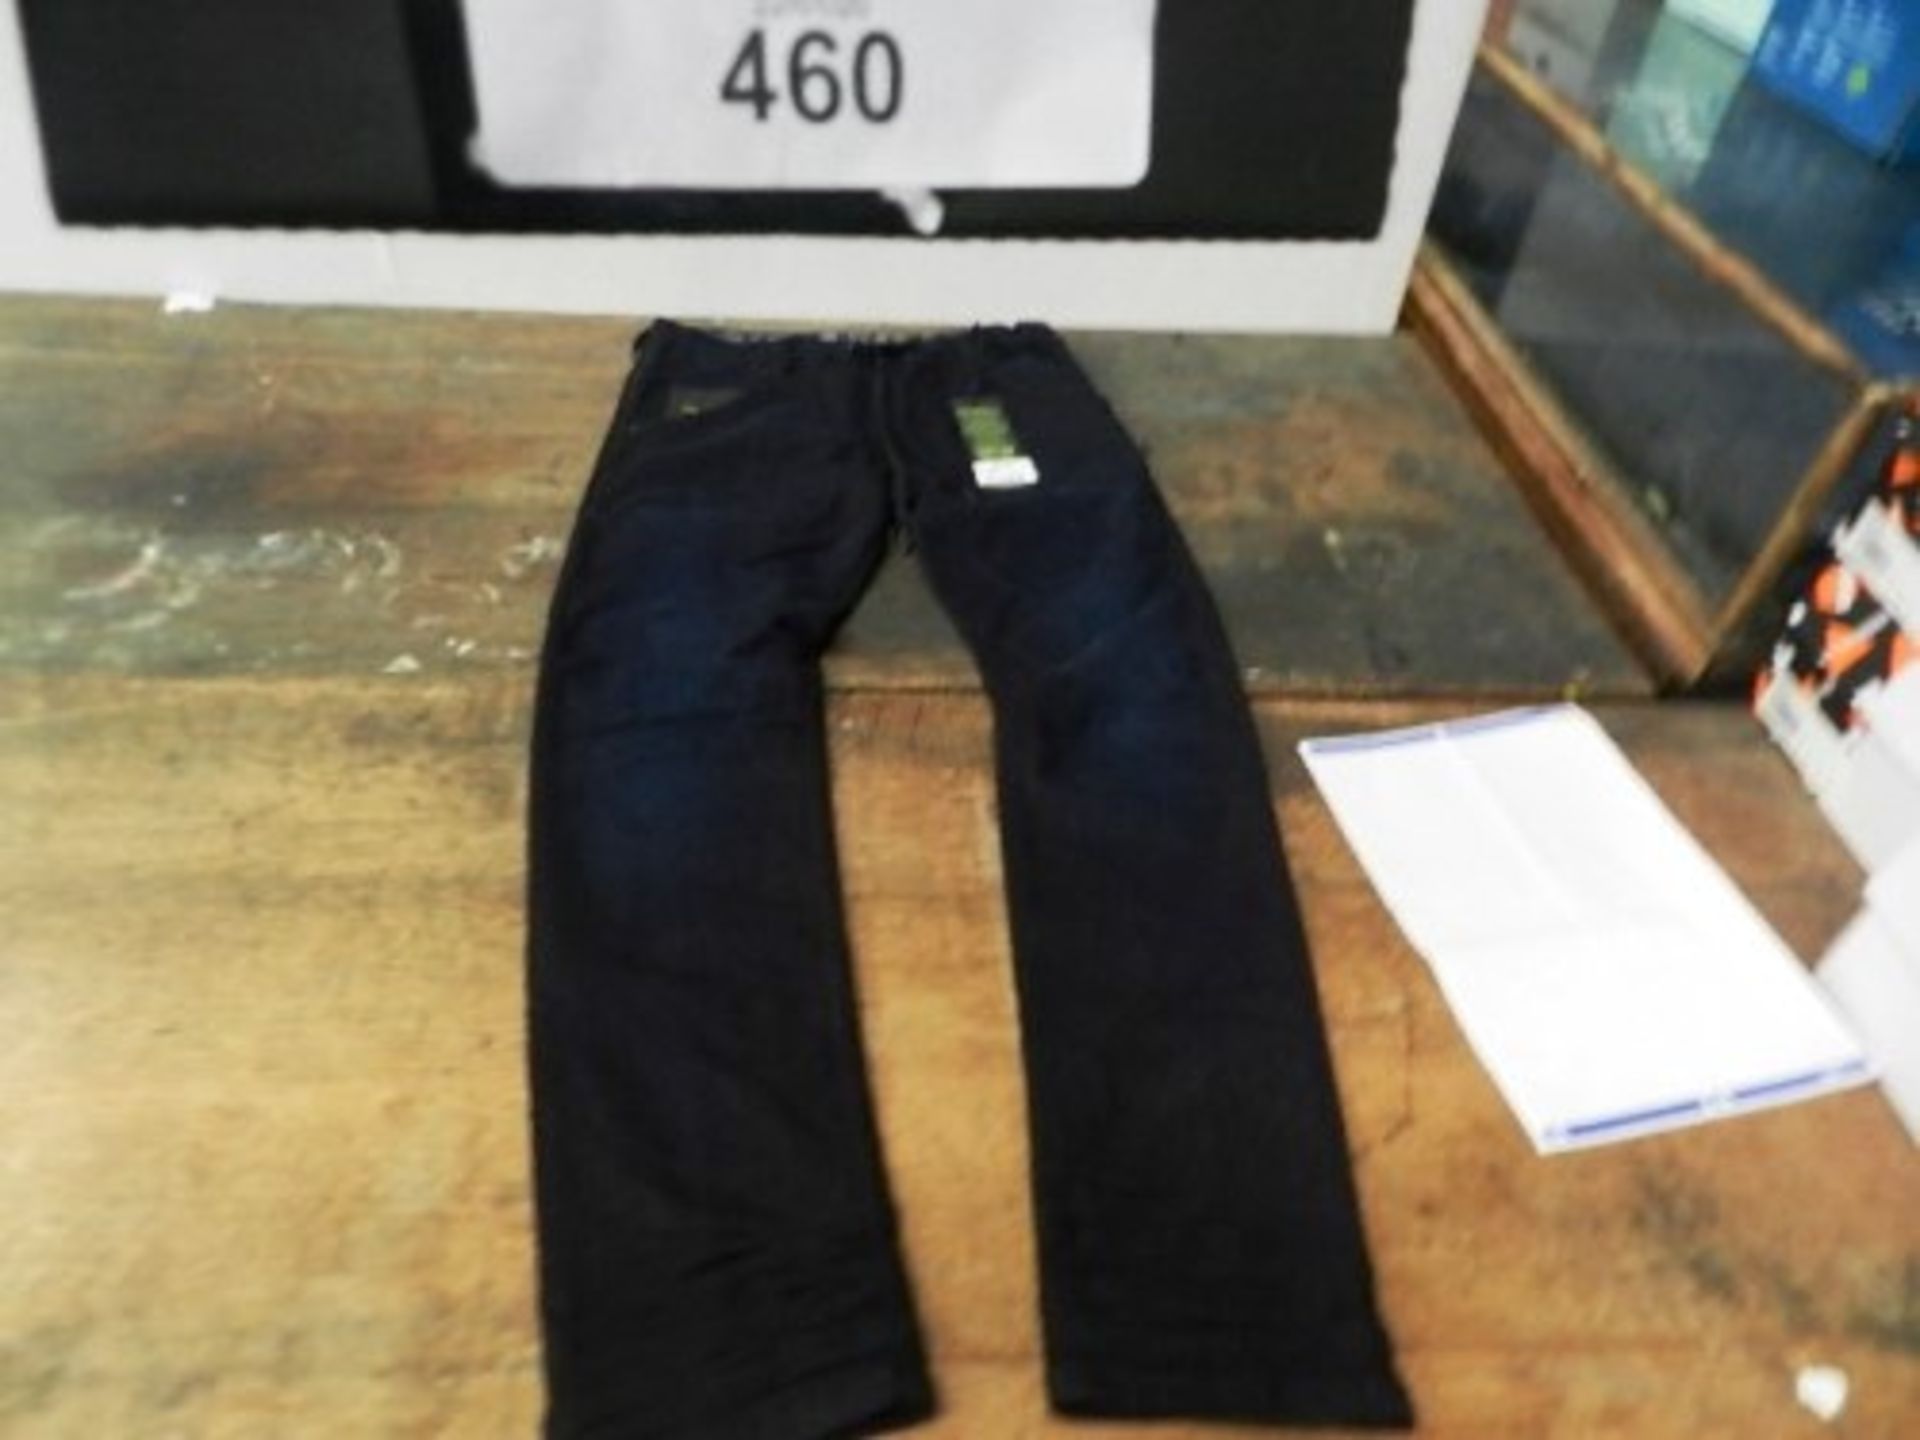 1 x Diesel unisex Krooley Jogg jeans, Denim Division sweat pants, size 30, RRP £130.00 - New (C13C)